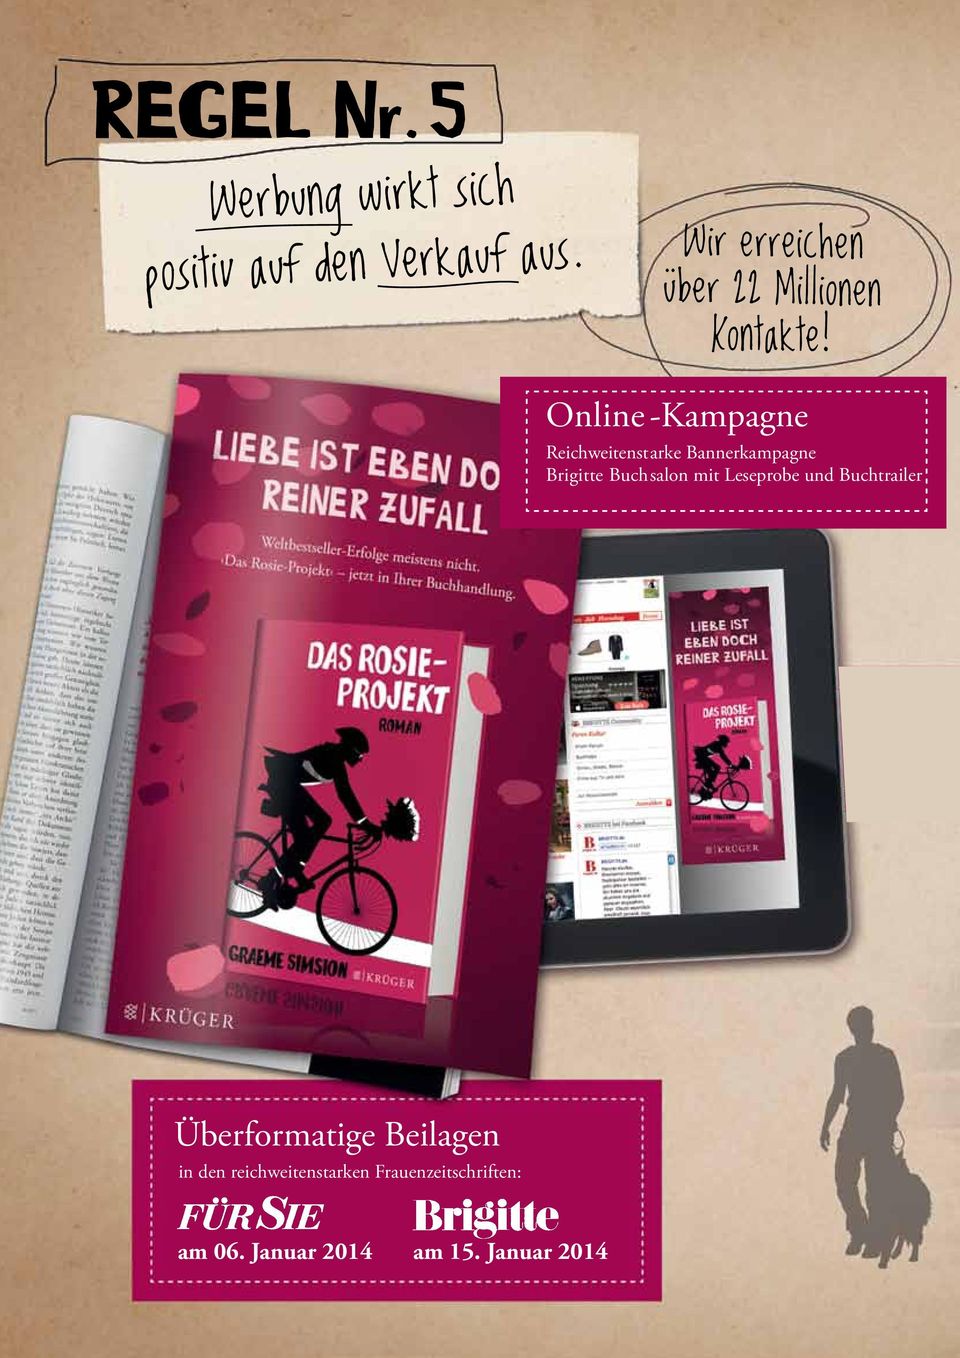 Online -Kampagne Reichweitenstarke Bannerkampagne Brigitte Buchsalon mit